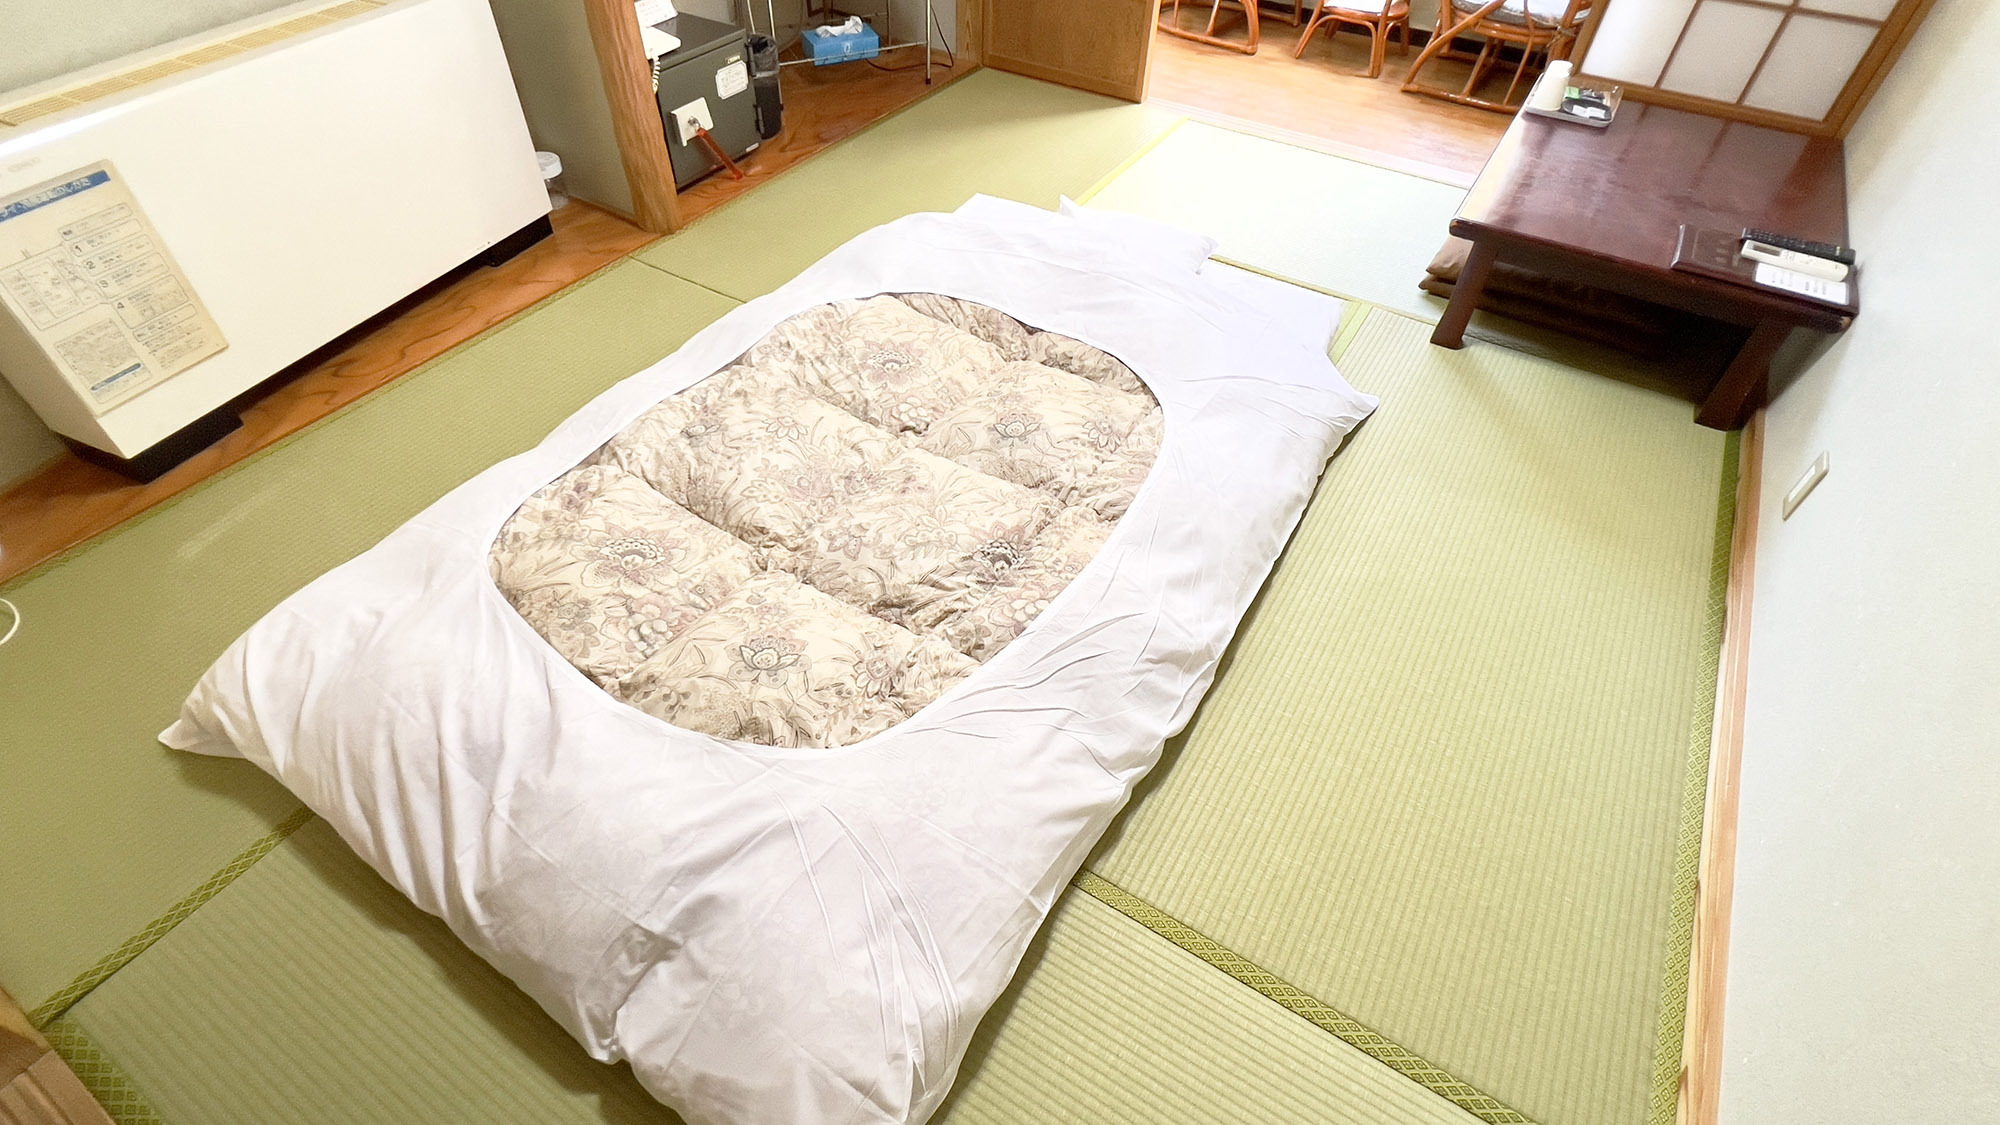 ・【和室6畳】畳の上に布団を敷いておやすみいただけます。一人旅のご利用にも最適なお部屋です